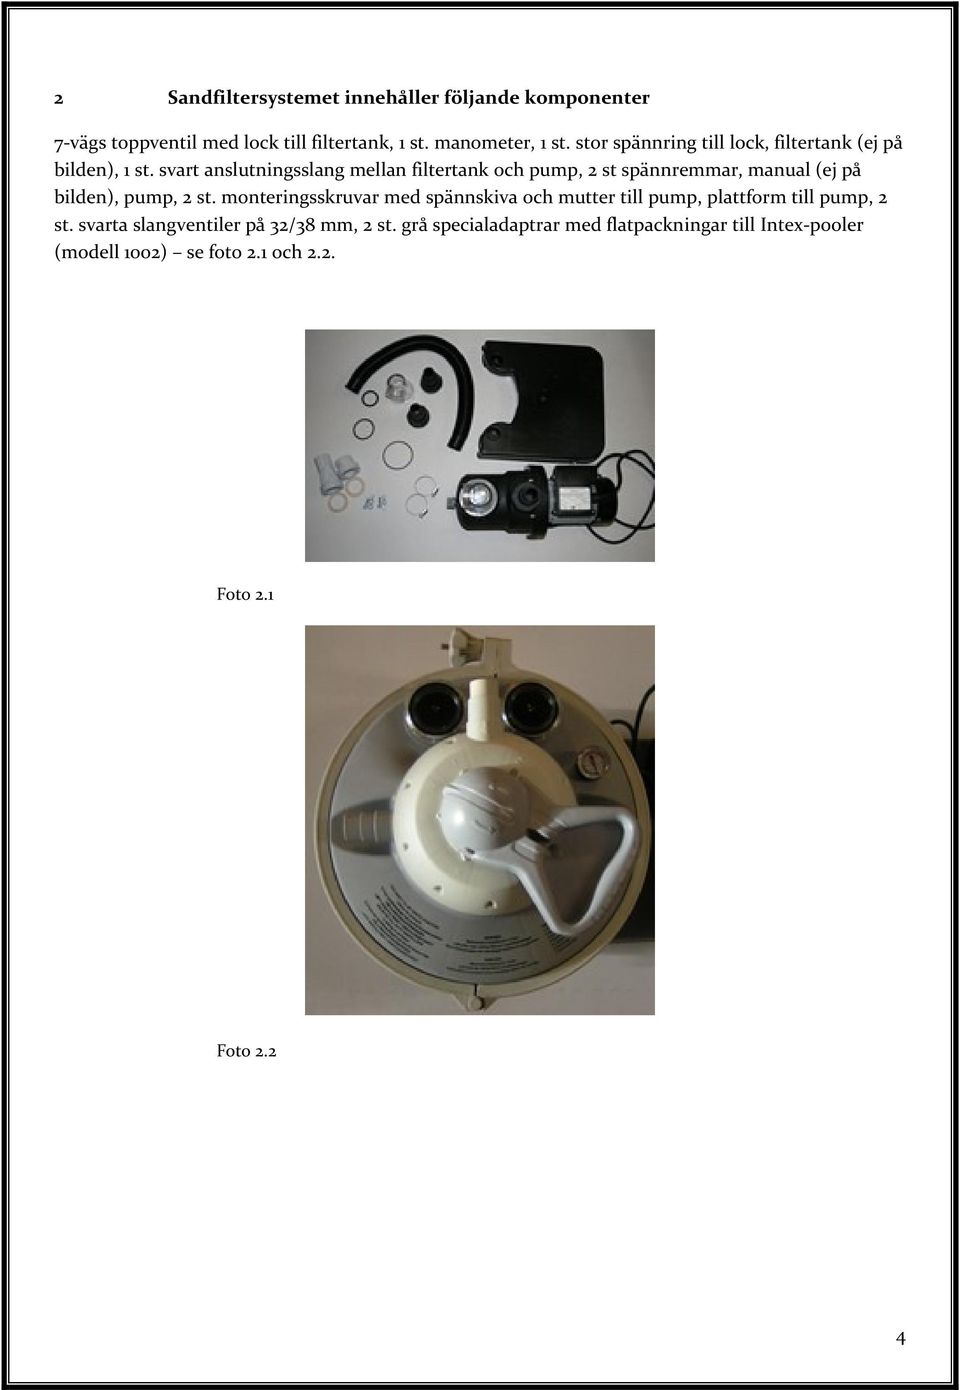 svart anslutningsslang mellan filtertank och pump, 2 st spännremmar, manual (ej på bilden), pump, 2 st.